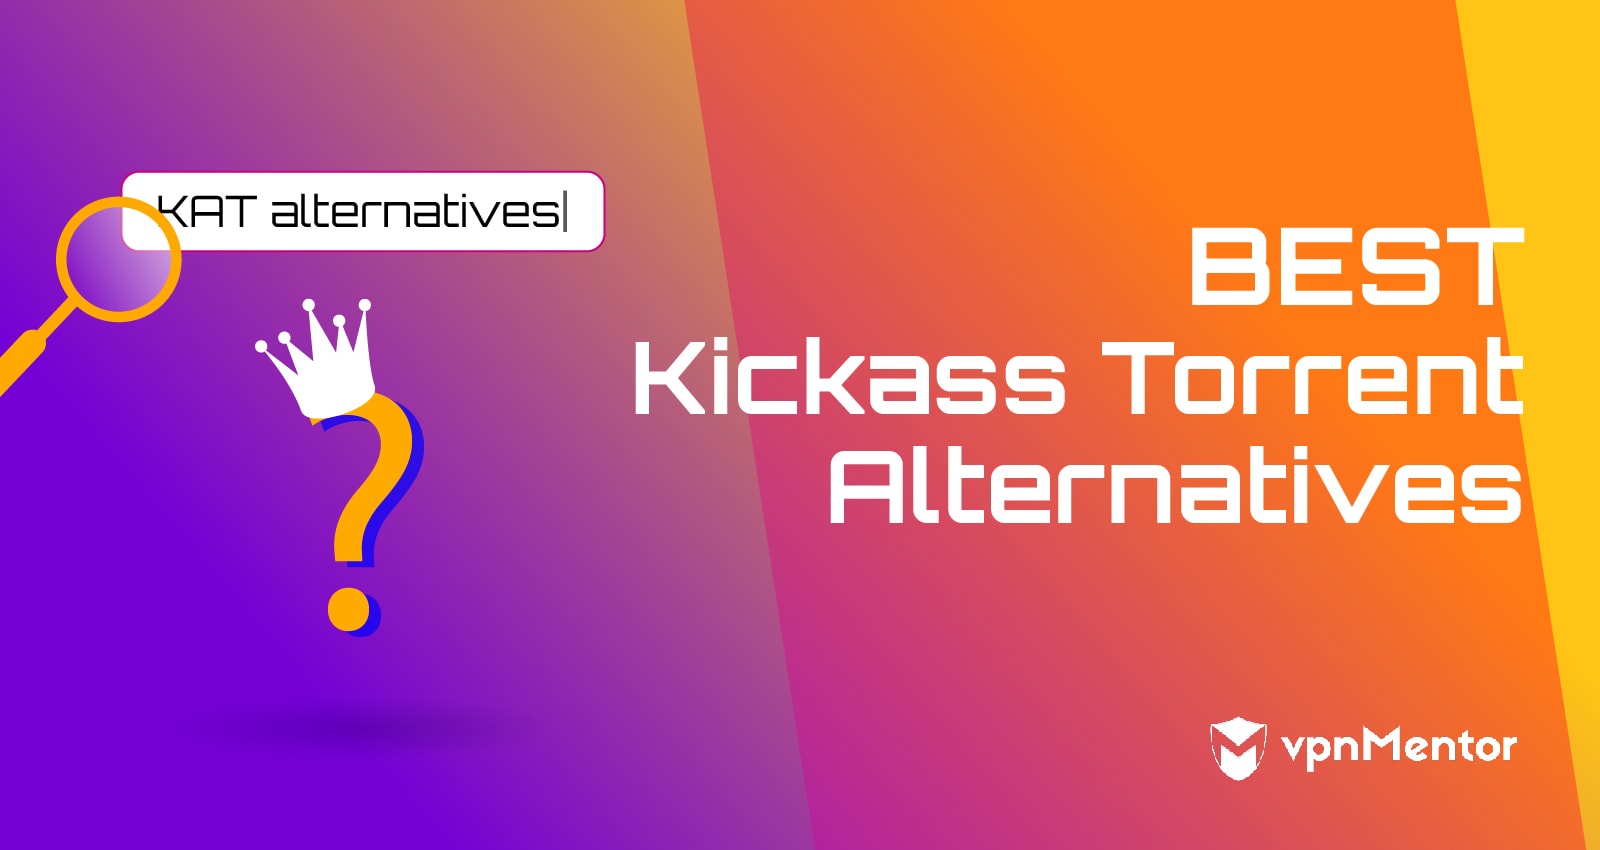 7 beste alternatieven voor Kickass Torrents die in 2022 werken